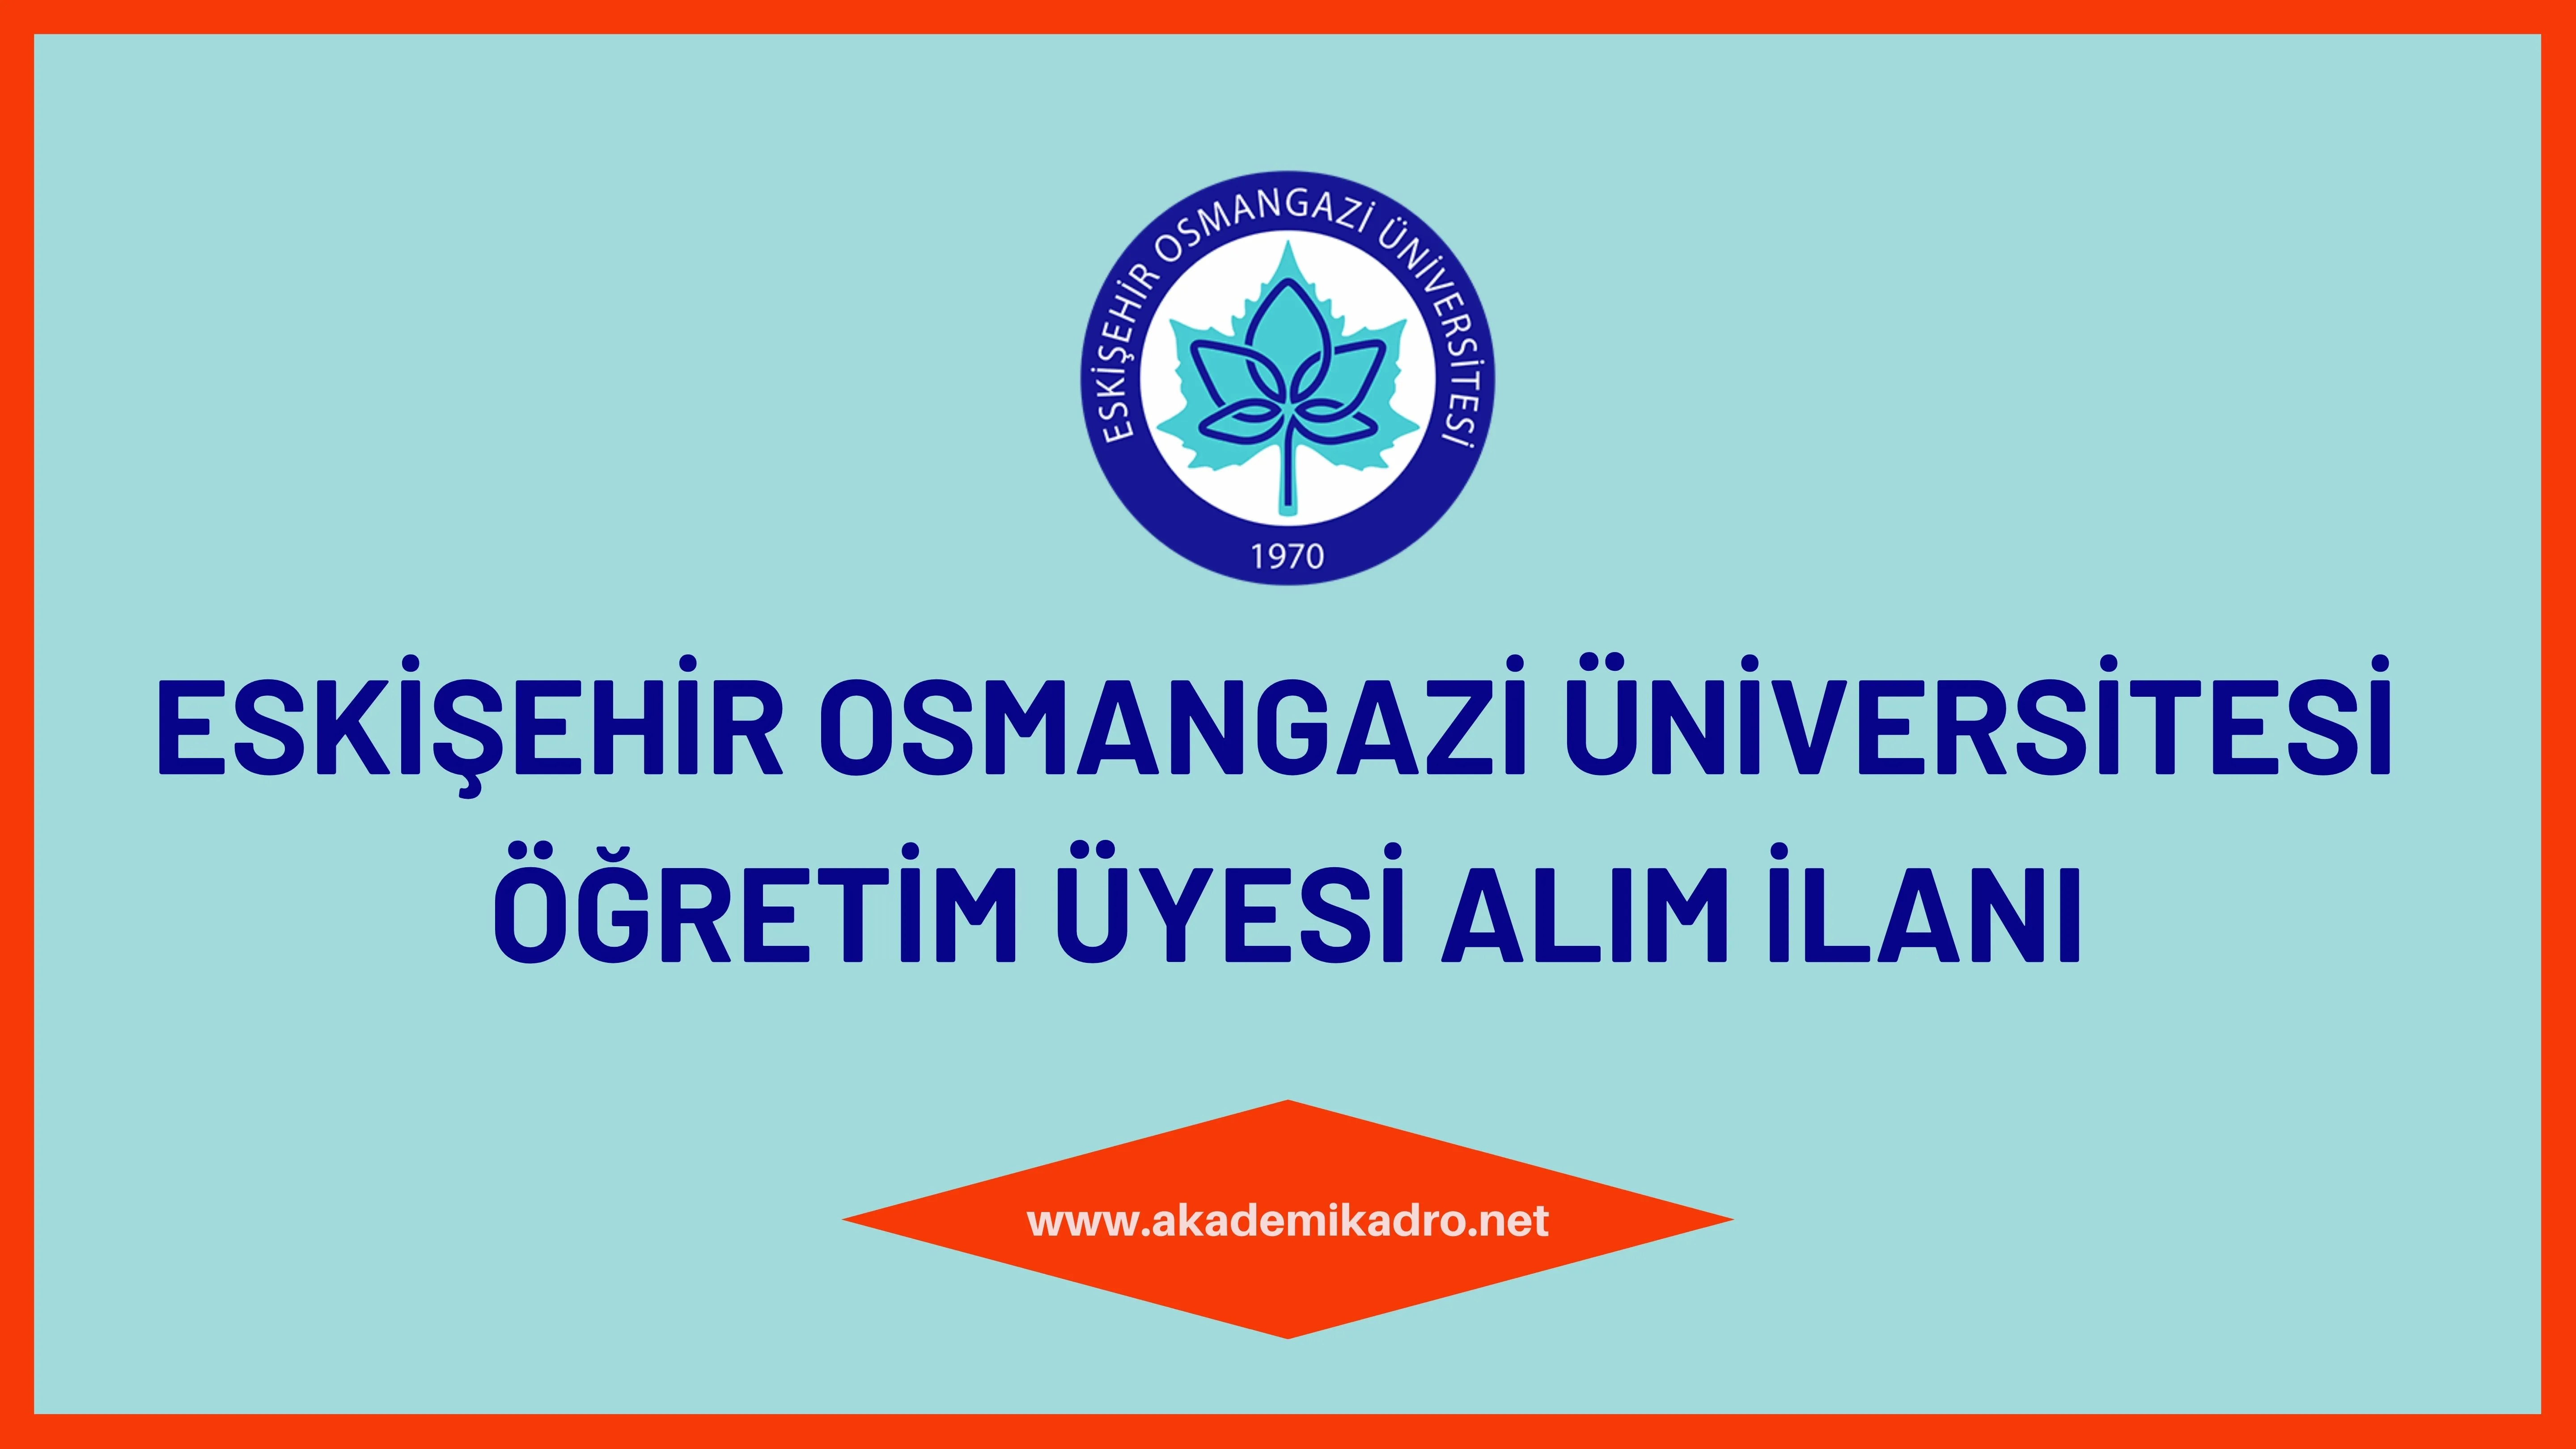 Eskişehir Osmangazi Üniversitesi 5 Öğretim üyesi alacak.